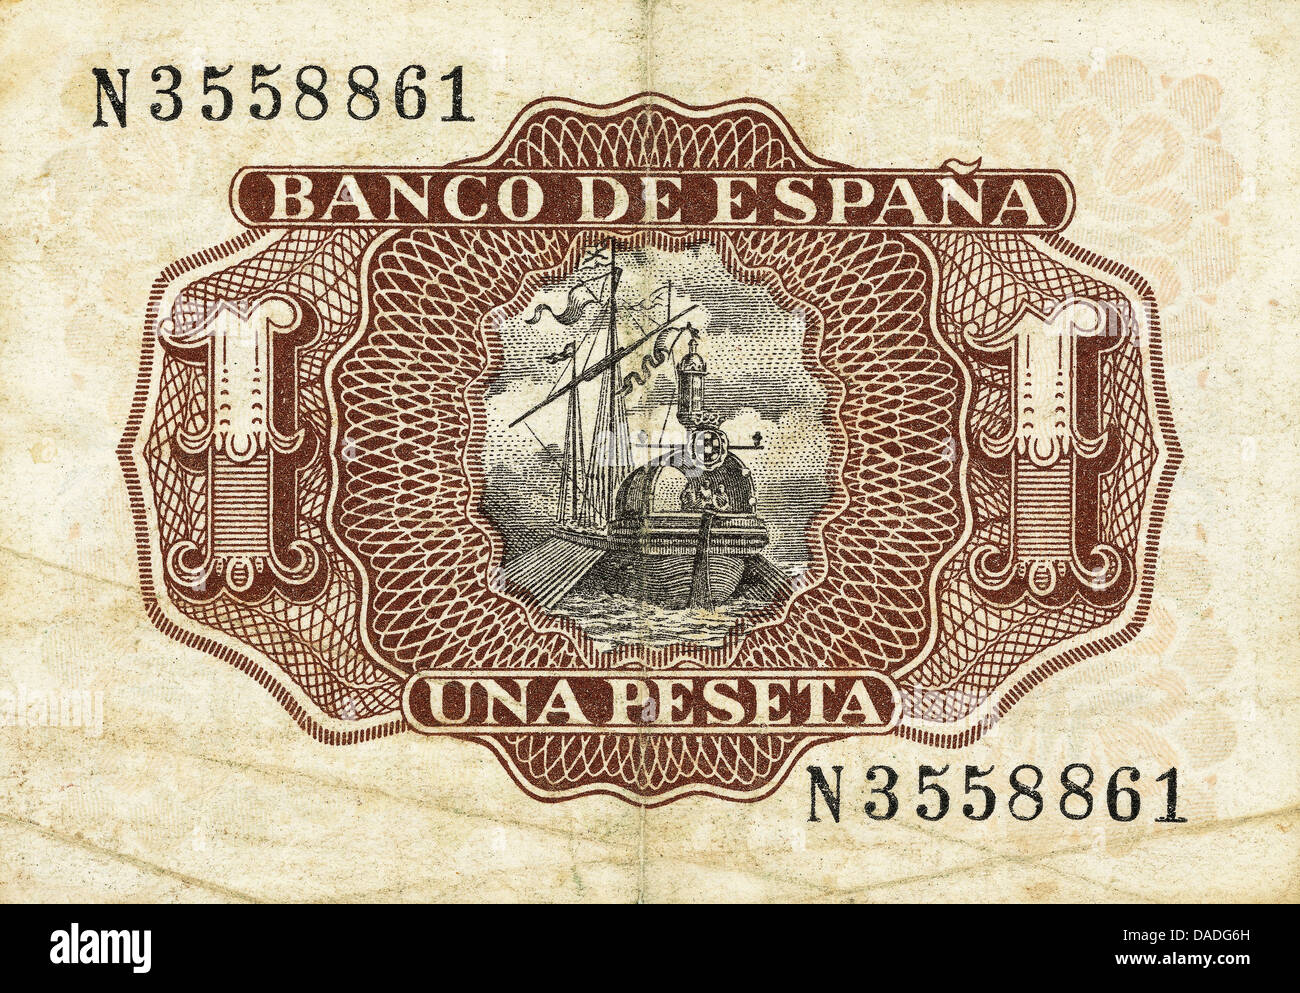 Le projet de loi d'une une peseta de 1953. Marche arrière. L'Espagne. Banque D'Images